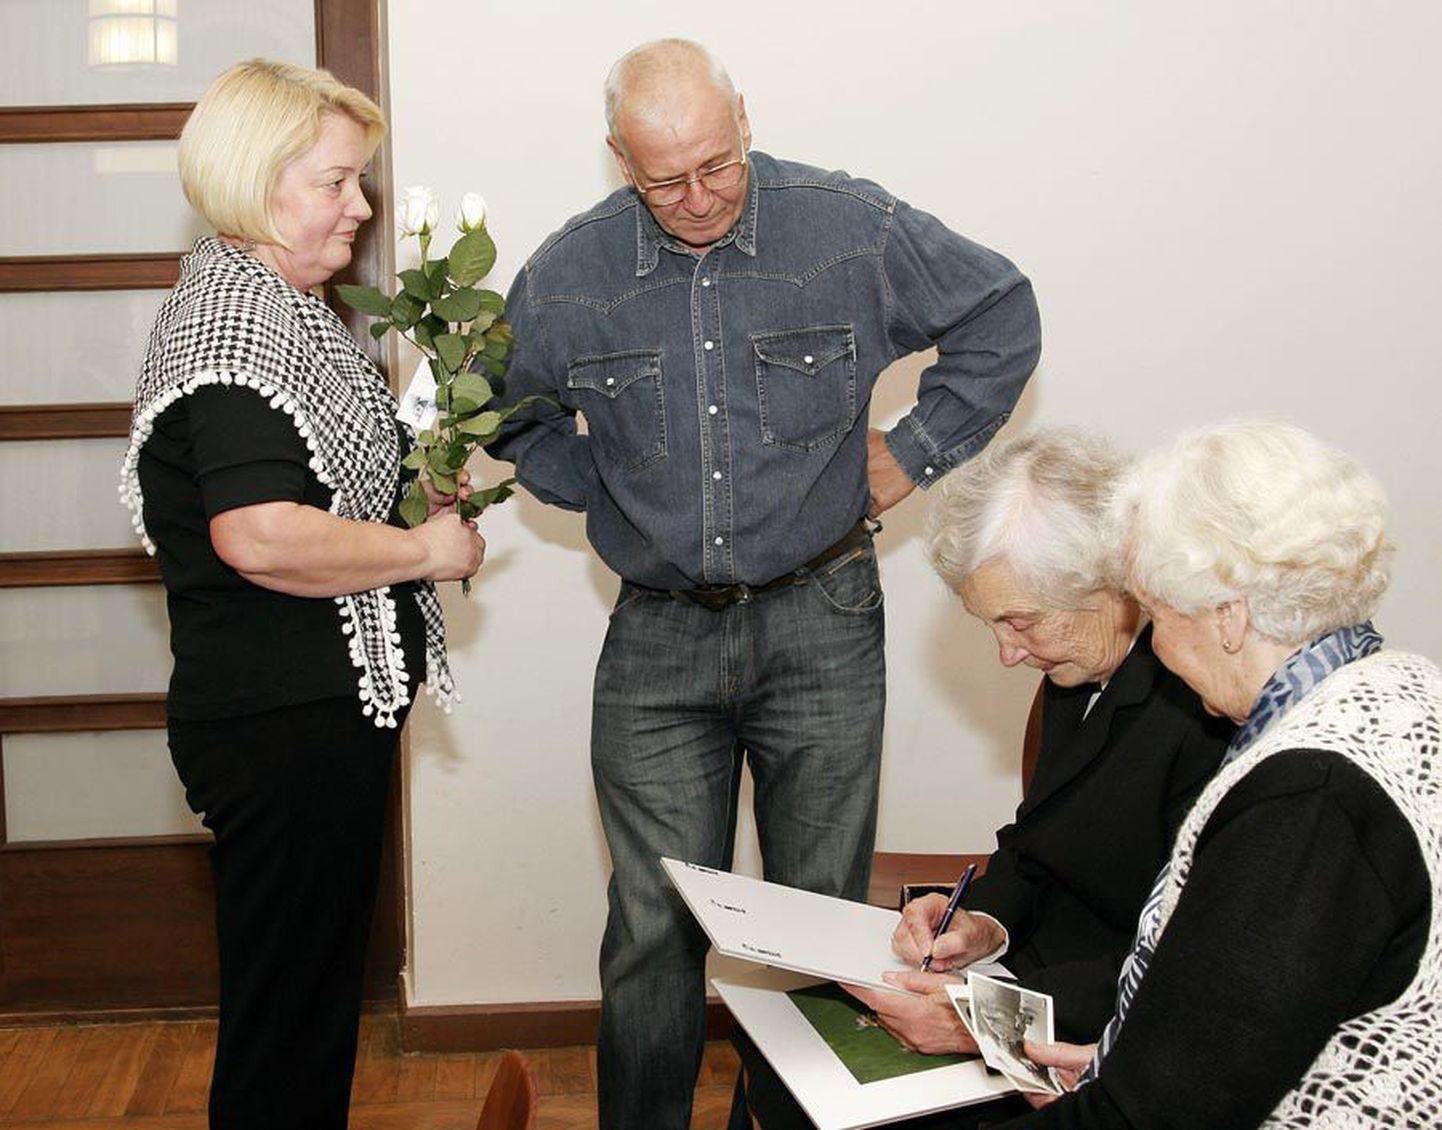 Merike ja Tiit Arumaa, kes olid abiellunud 28. oktoobril 1978, palusid linnavalitsuse kingitud lillefotole Helgi Kissalt autogrammi.